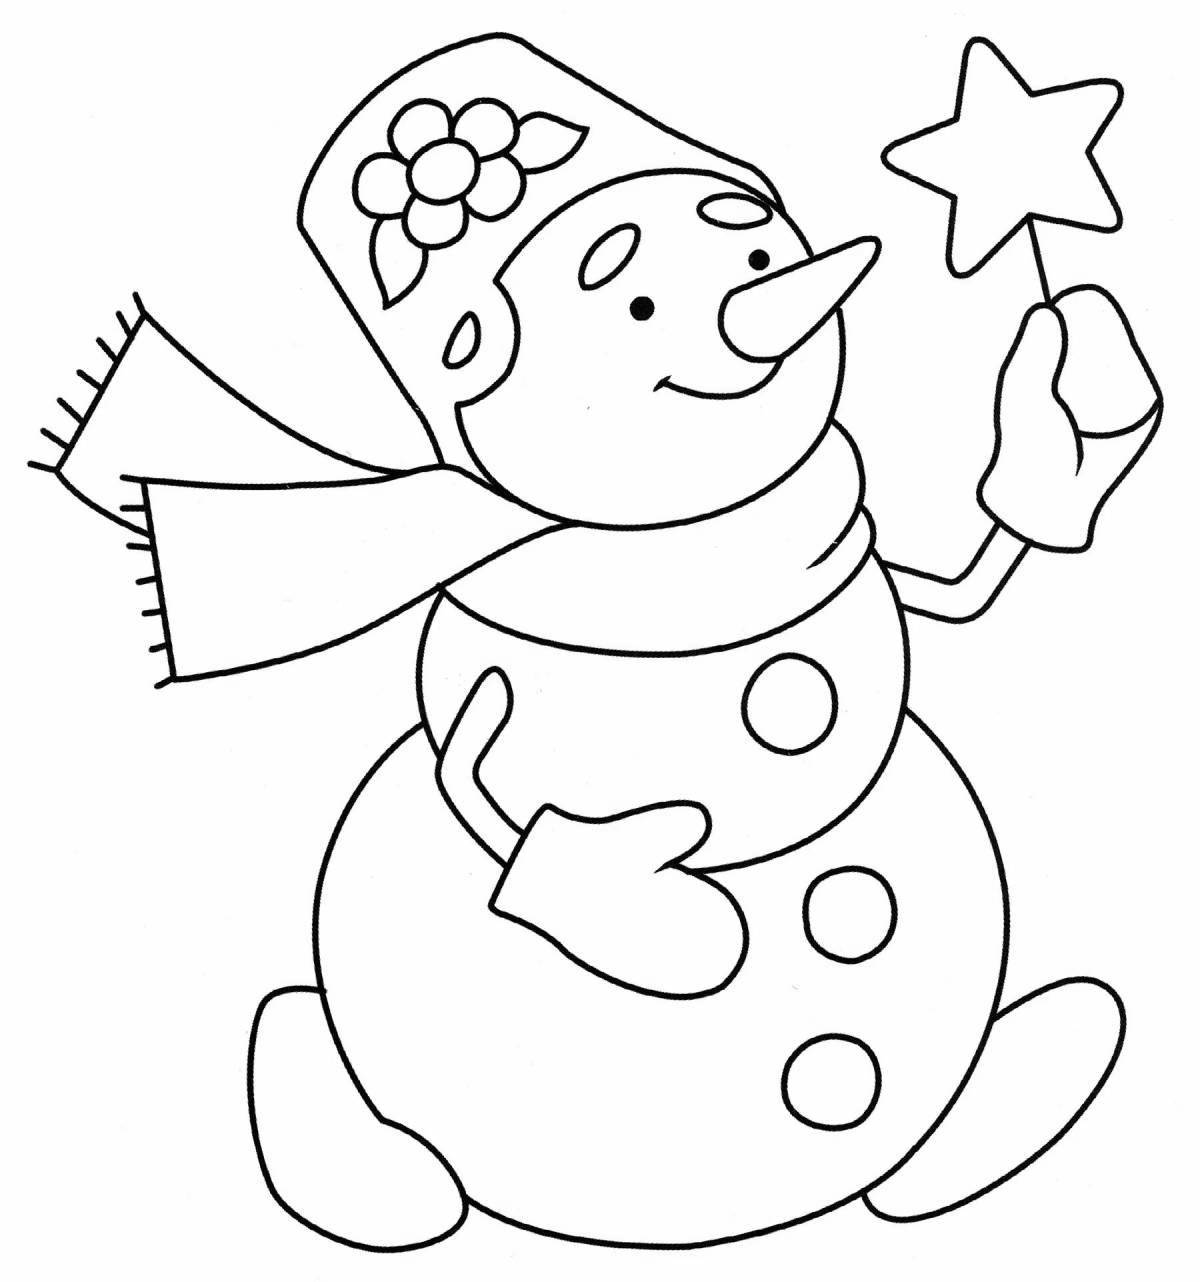 Игривая раскраска снеговик для детей 3-4 лет